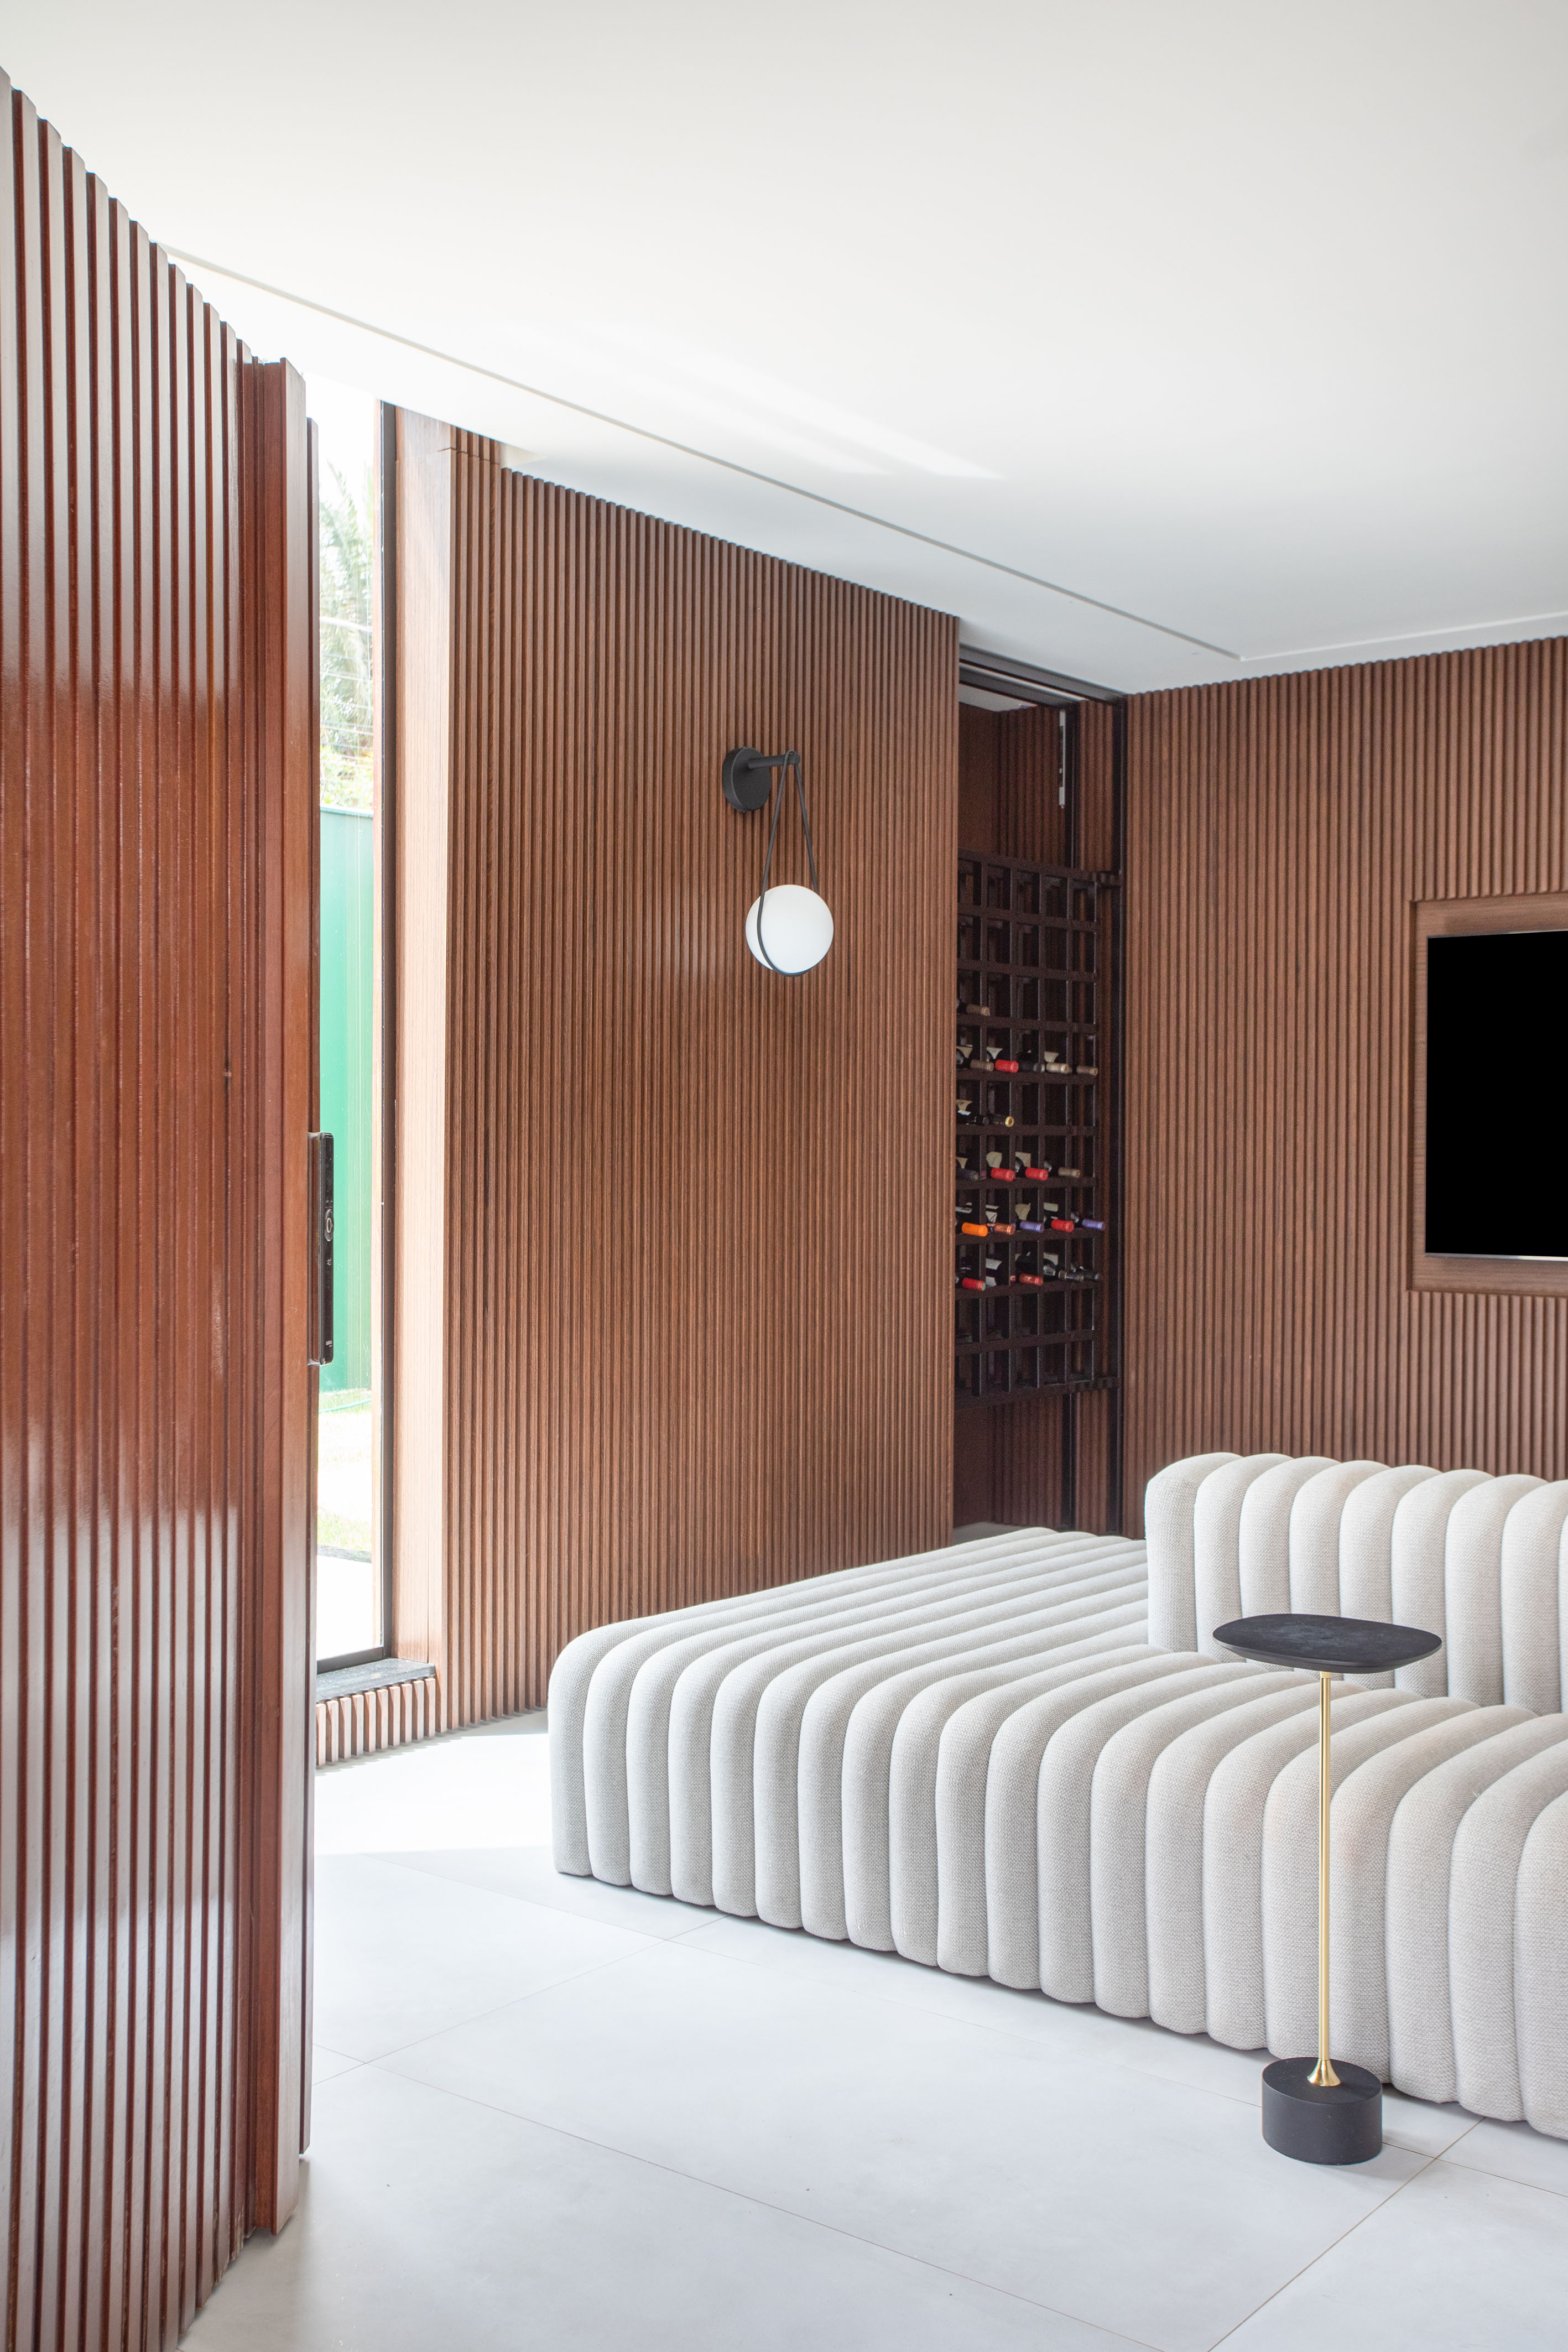 Sala com sofá ilha branco e parede revestida de madeira.